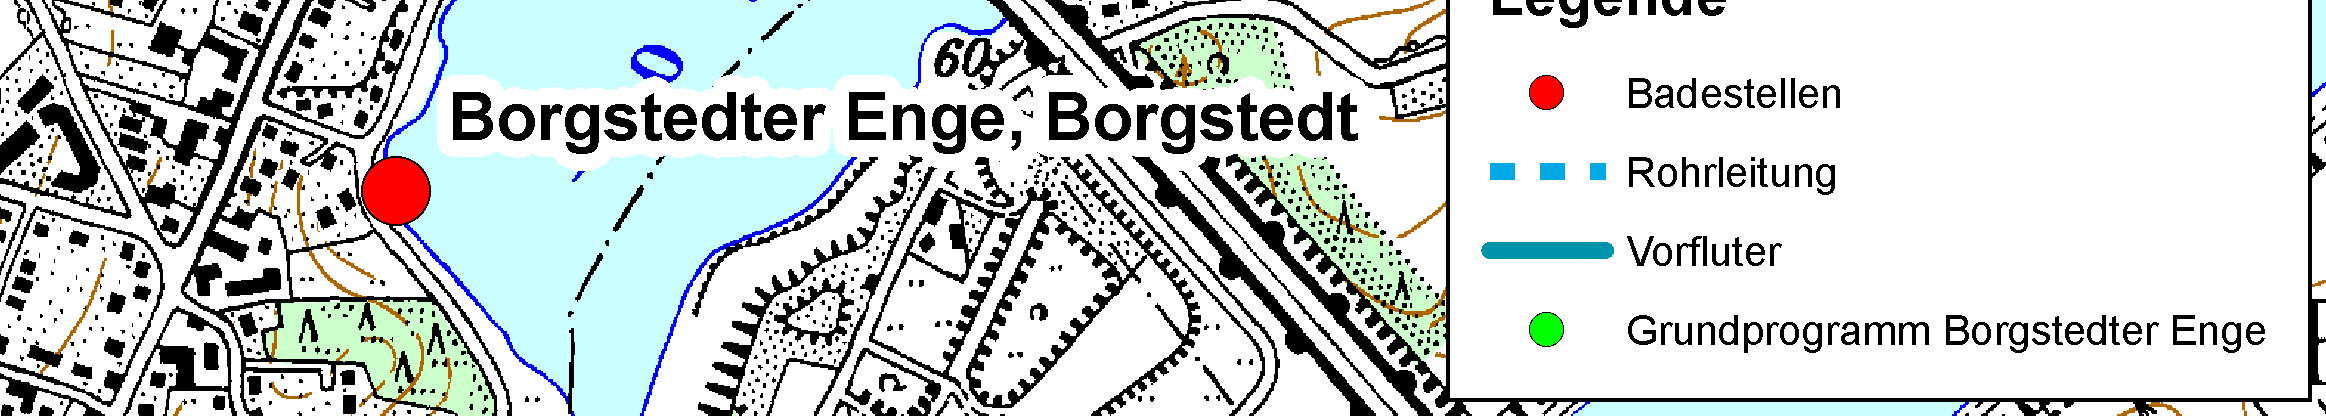 Untersuchungsgebiete Abbildung 3-6: Übersichtskarte Borgstedter Enge, Badestelle in rot dargestellt In Borgstedt befindet sich eine Regenwassereinleitung die durch einen Sandfang in die Enge